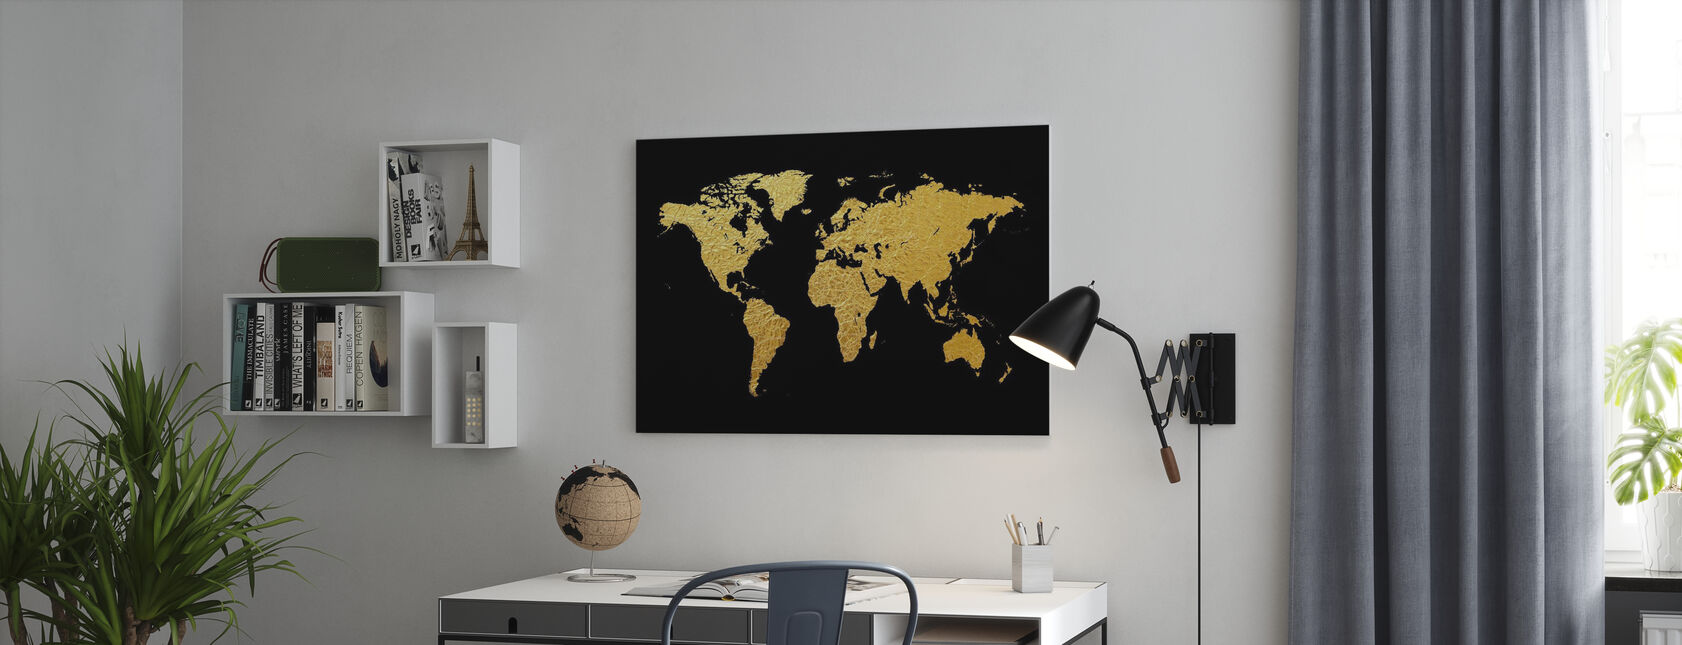 Gull verdenskart med svart bakgrunn - Lerretsbilde - Kontor